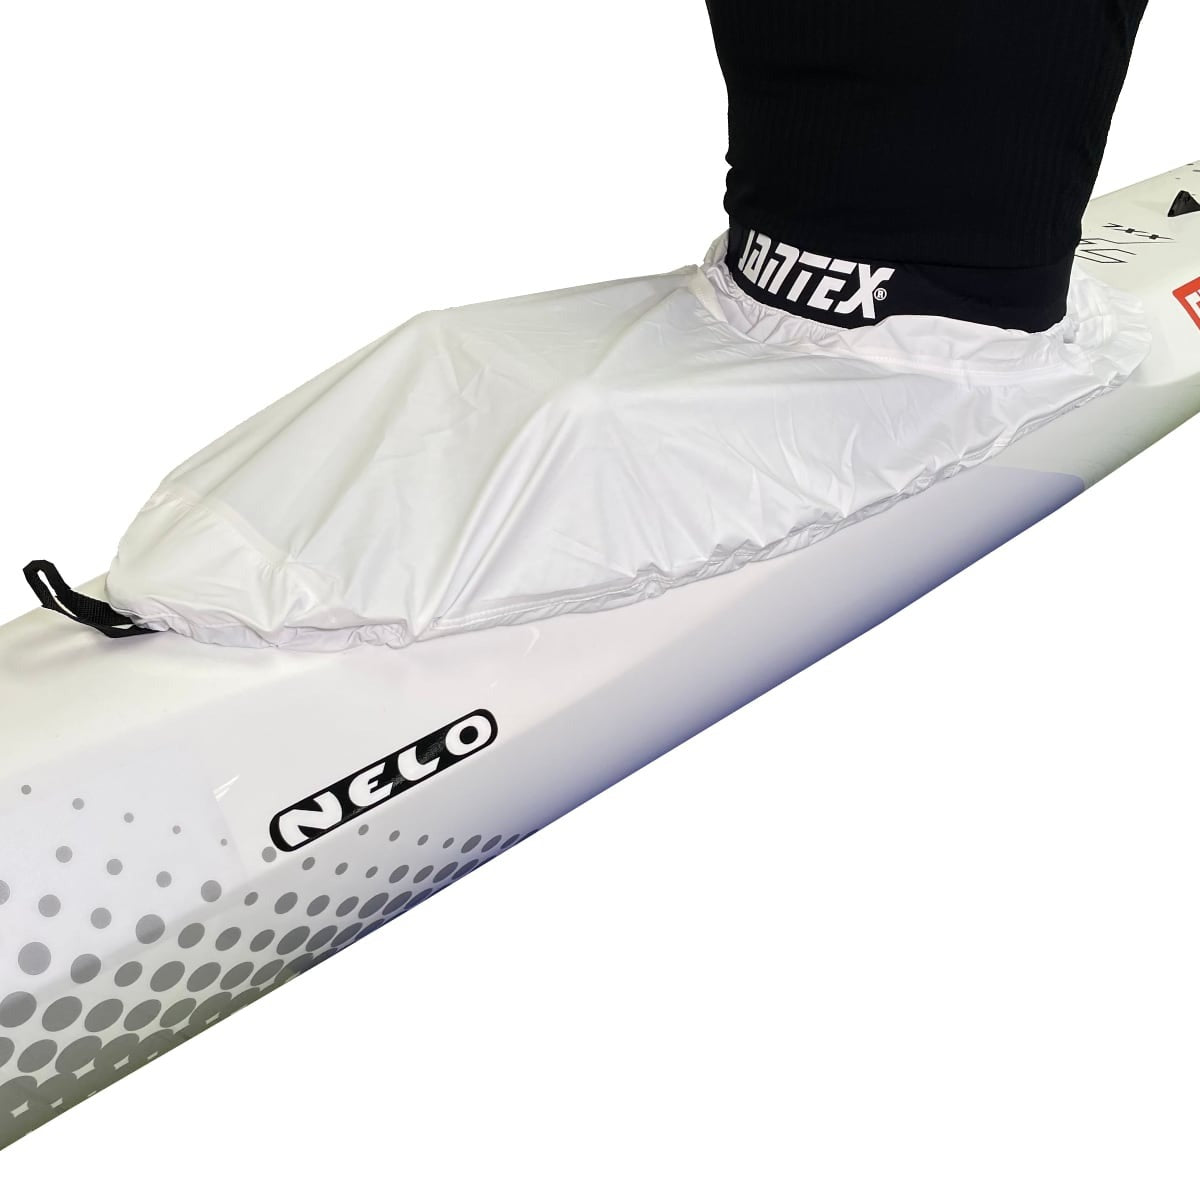 Jantex kanot racing kapell vit